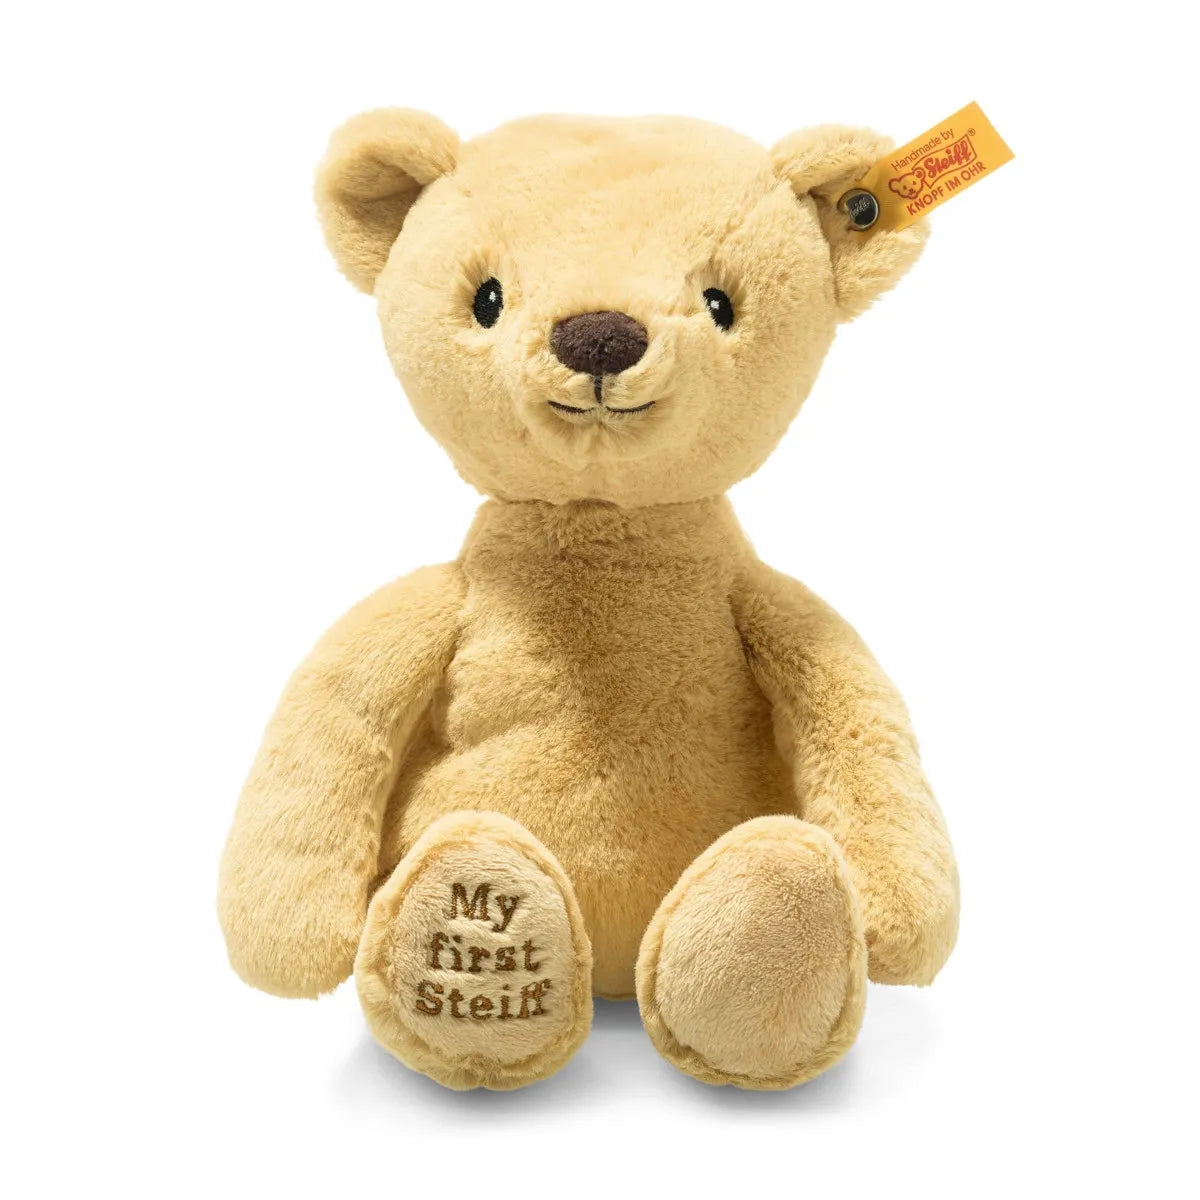 My First Steiff - Soft Cuddly Friends Teddy Bear